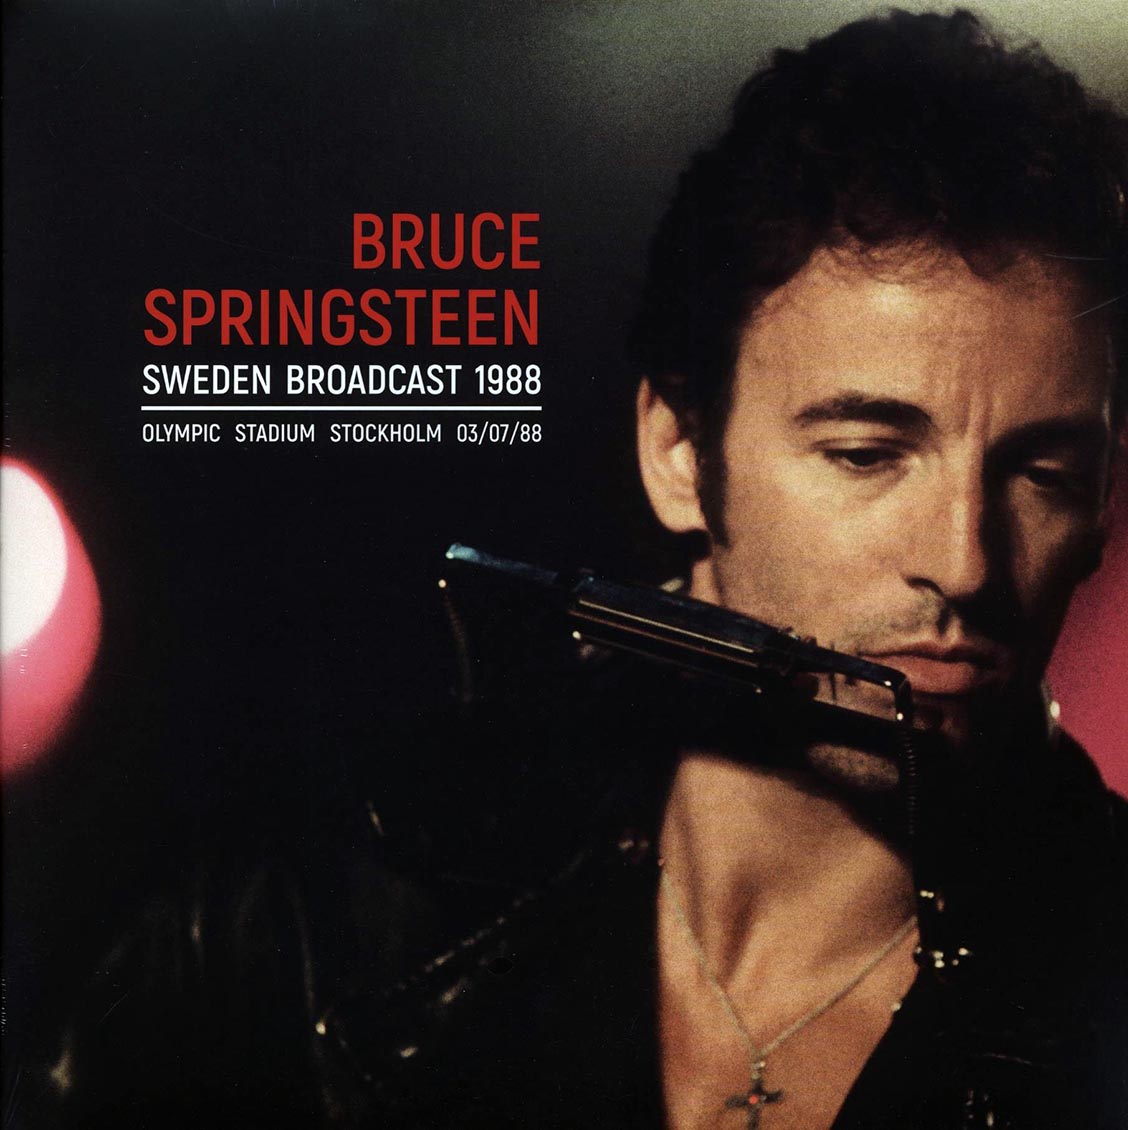 Bruce Springsteen - Sweden Broadcast 1988: Olympic Stadium Stockholm 03/07/88